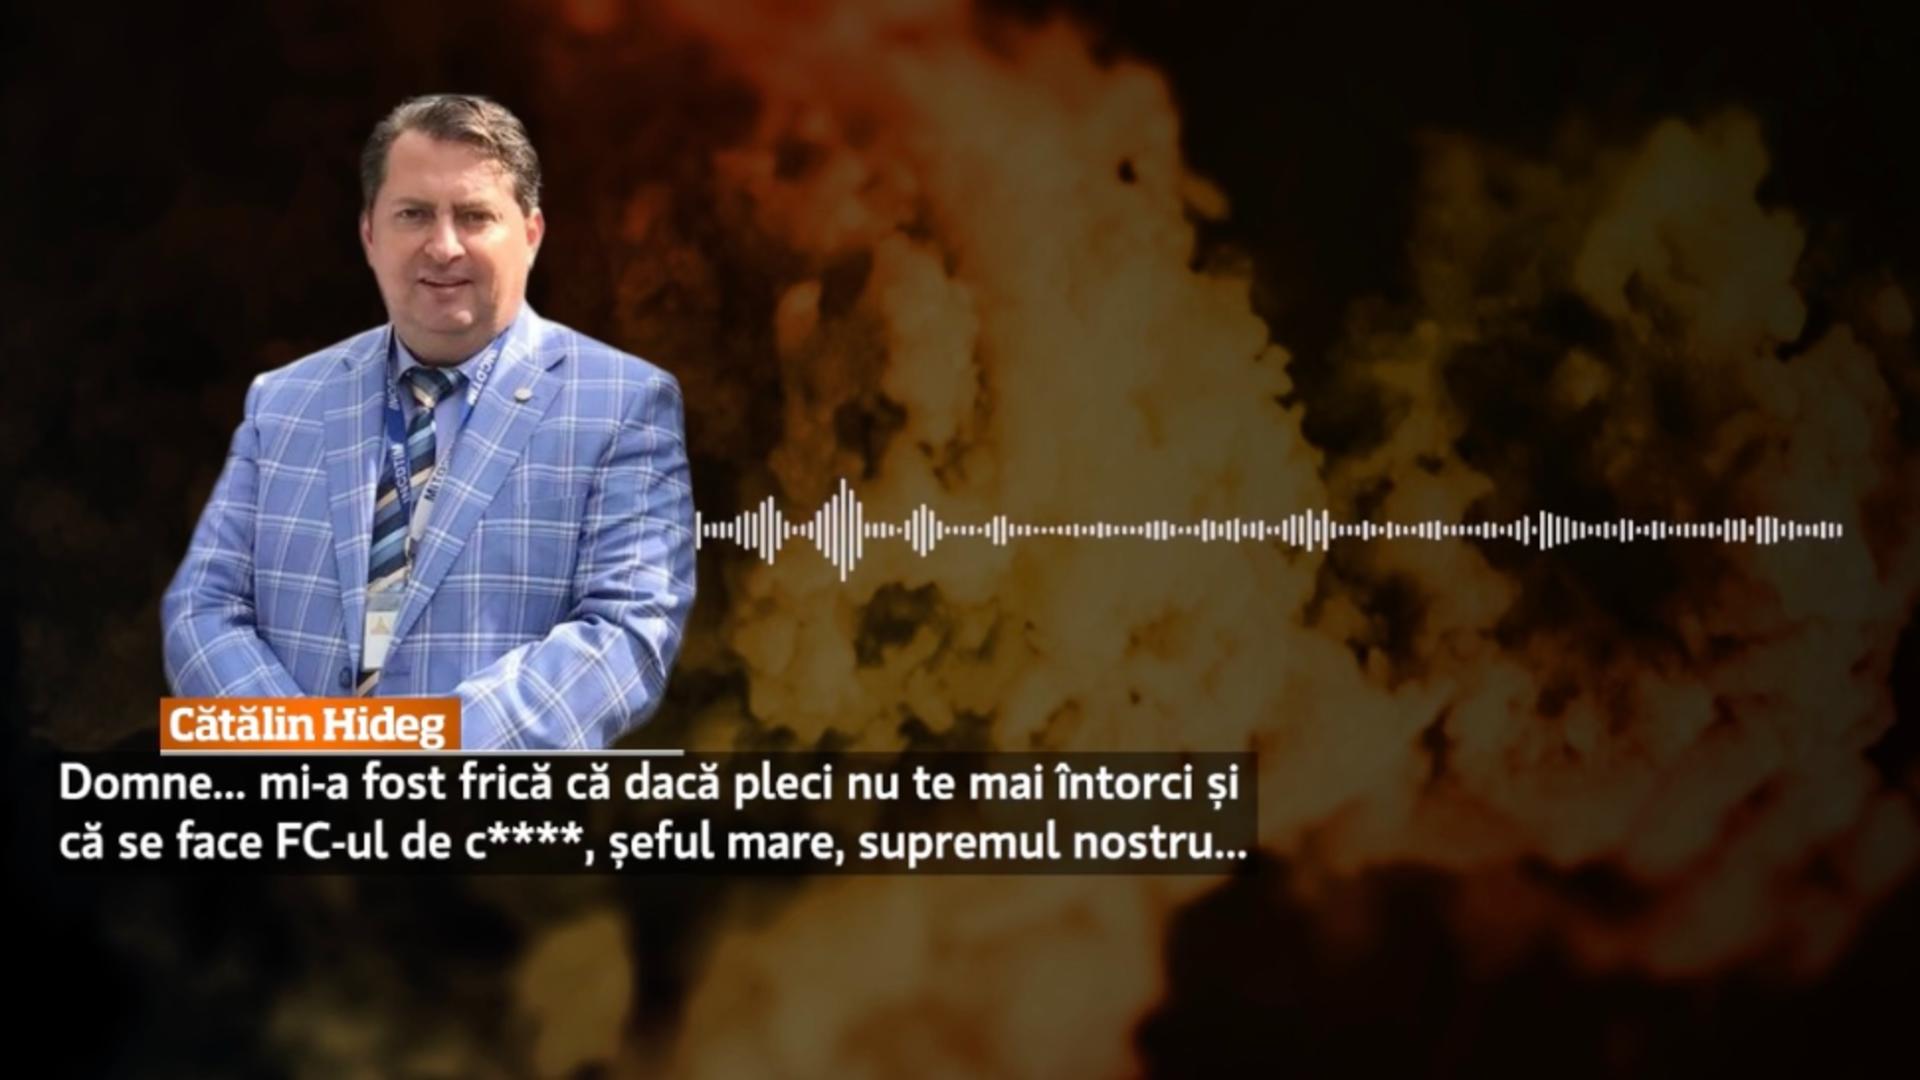 Denunțătorul lui  Florian Coldea, înregistrarea prin care îl demască: “Șeful mare, supremul nostru” – VIDEO